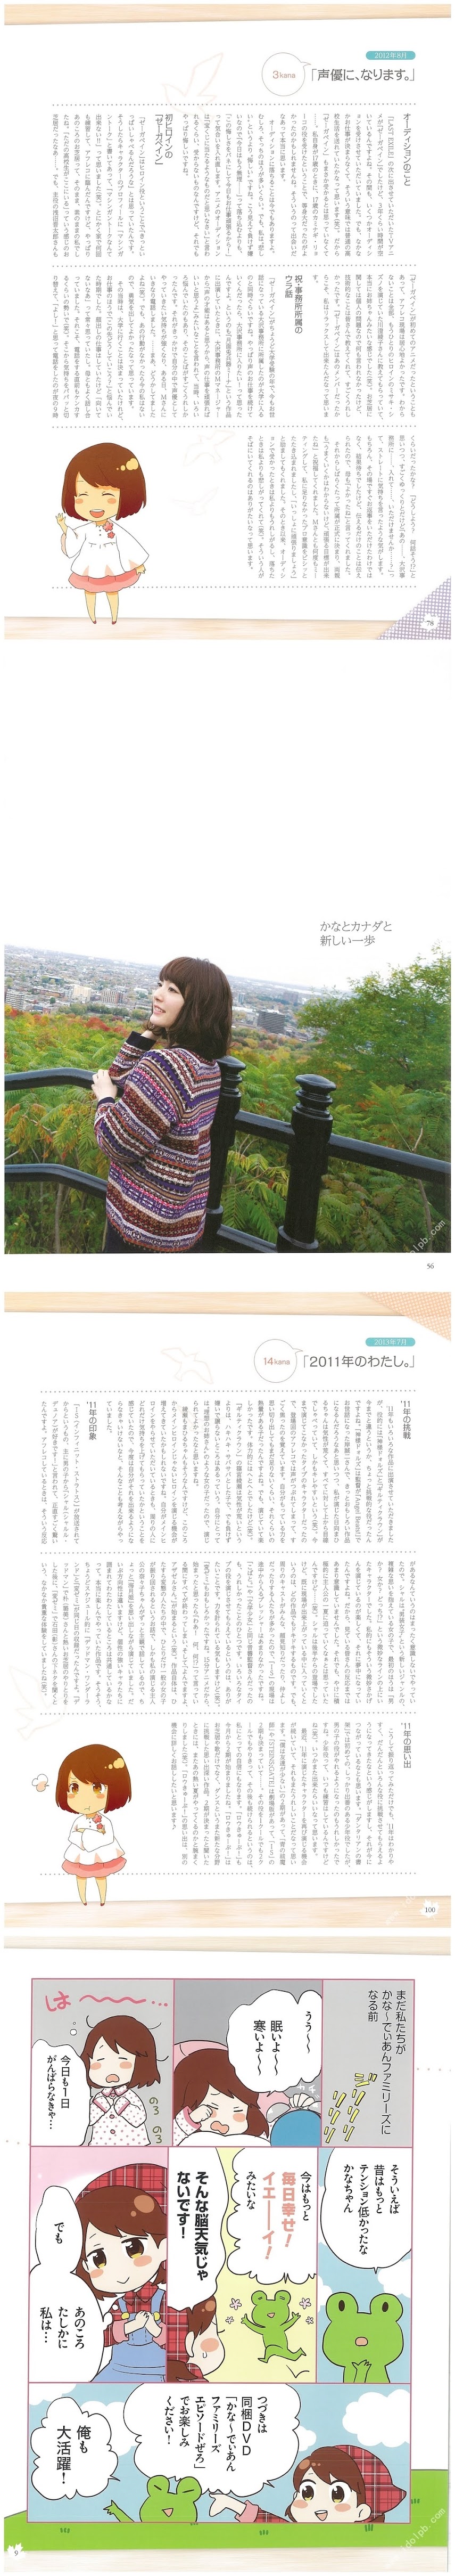 [PB] 2015.07.10 かながたり。 かなばかり。 花澤香菜   REP187 - idols